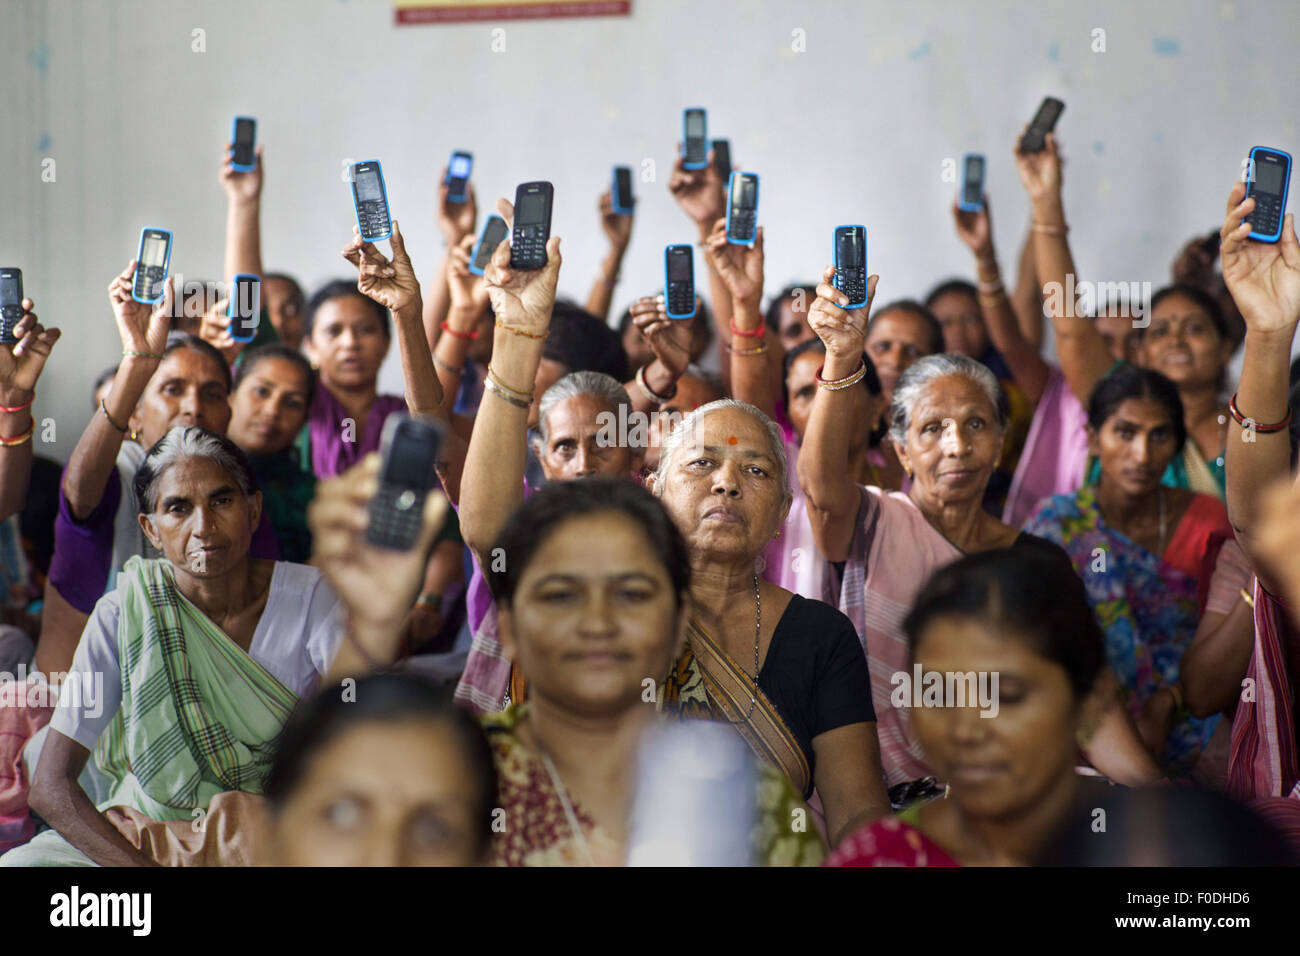 Ahmedabad, Gujarat. 16 Luglio, 2014. 16 Luglio 2014 - Ahmedabad - INDIA :.Le donne rurali orgogliosamente mostrare i loro telefoni cellulari come un mezzo per guadagnare i loro mezzi di sussistenza. La RSV mobile app consente le donne imprenditrici in rete per catturare le vendite e inserire gli ordini per ulteriori scorte tramite SMS utilizzando la loro funzione di base telefoni. Accesso a un dispositivo mobile può essere capace di cambiare la vita, in particolare per le donne. La ricerca ha rivelato che 9 su 10 donne nei mercati in via di sviluppo si sentono più sicuri a causa del loro telefoni cellulari; 8 su dieci si sentono più indipendenti con accesso alla tecnologia mobile e più della metà hanno usato un Foto Stock